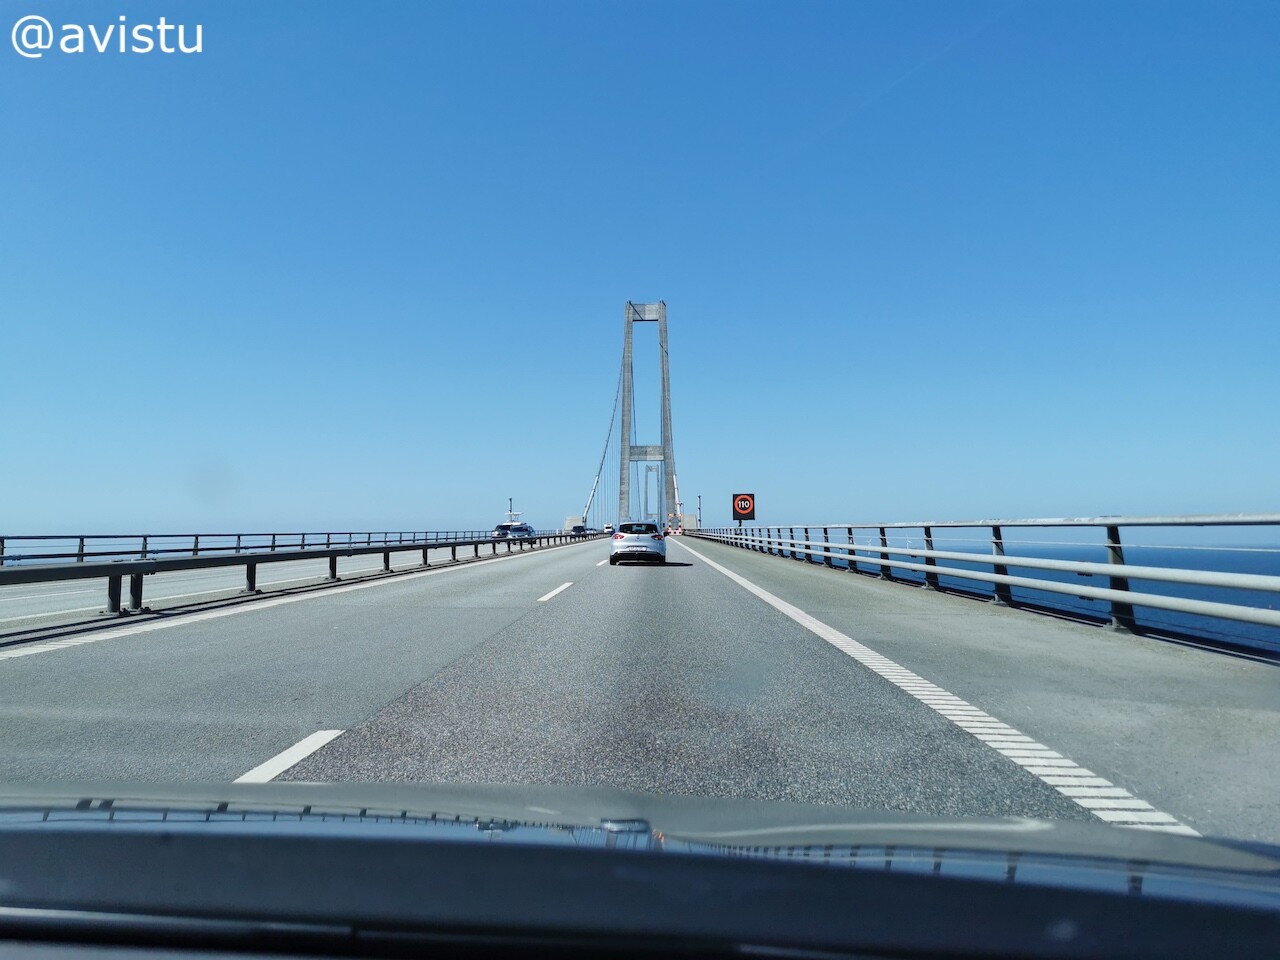 Cruzando el Puente Storebælt en Dinamarca [(c) Foto: @avistu]